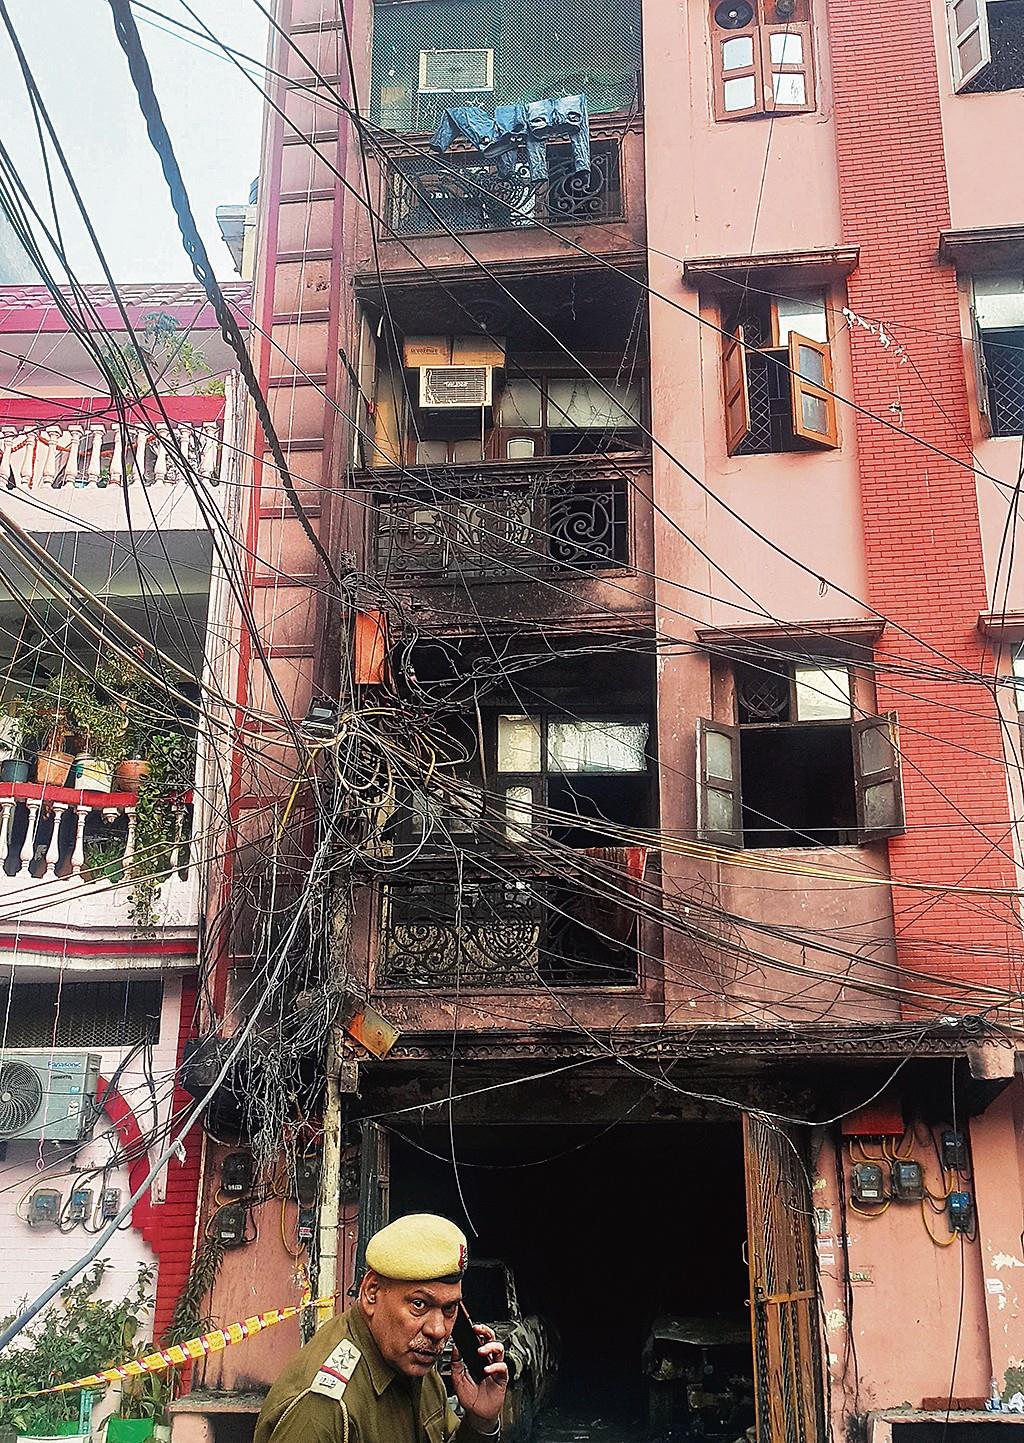 Woman killed in East Delhi building fire